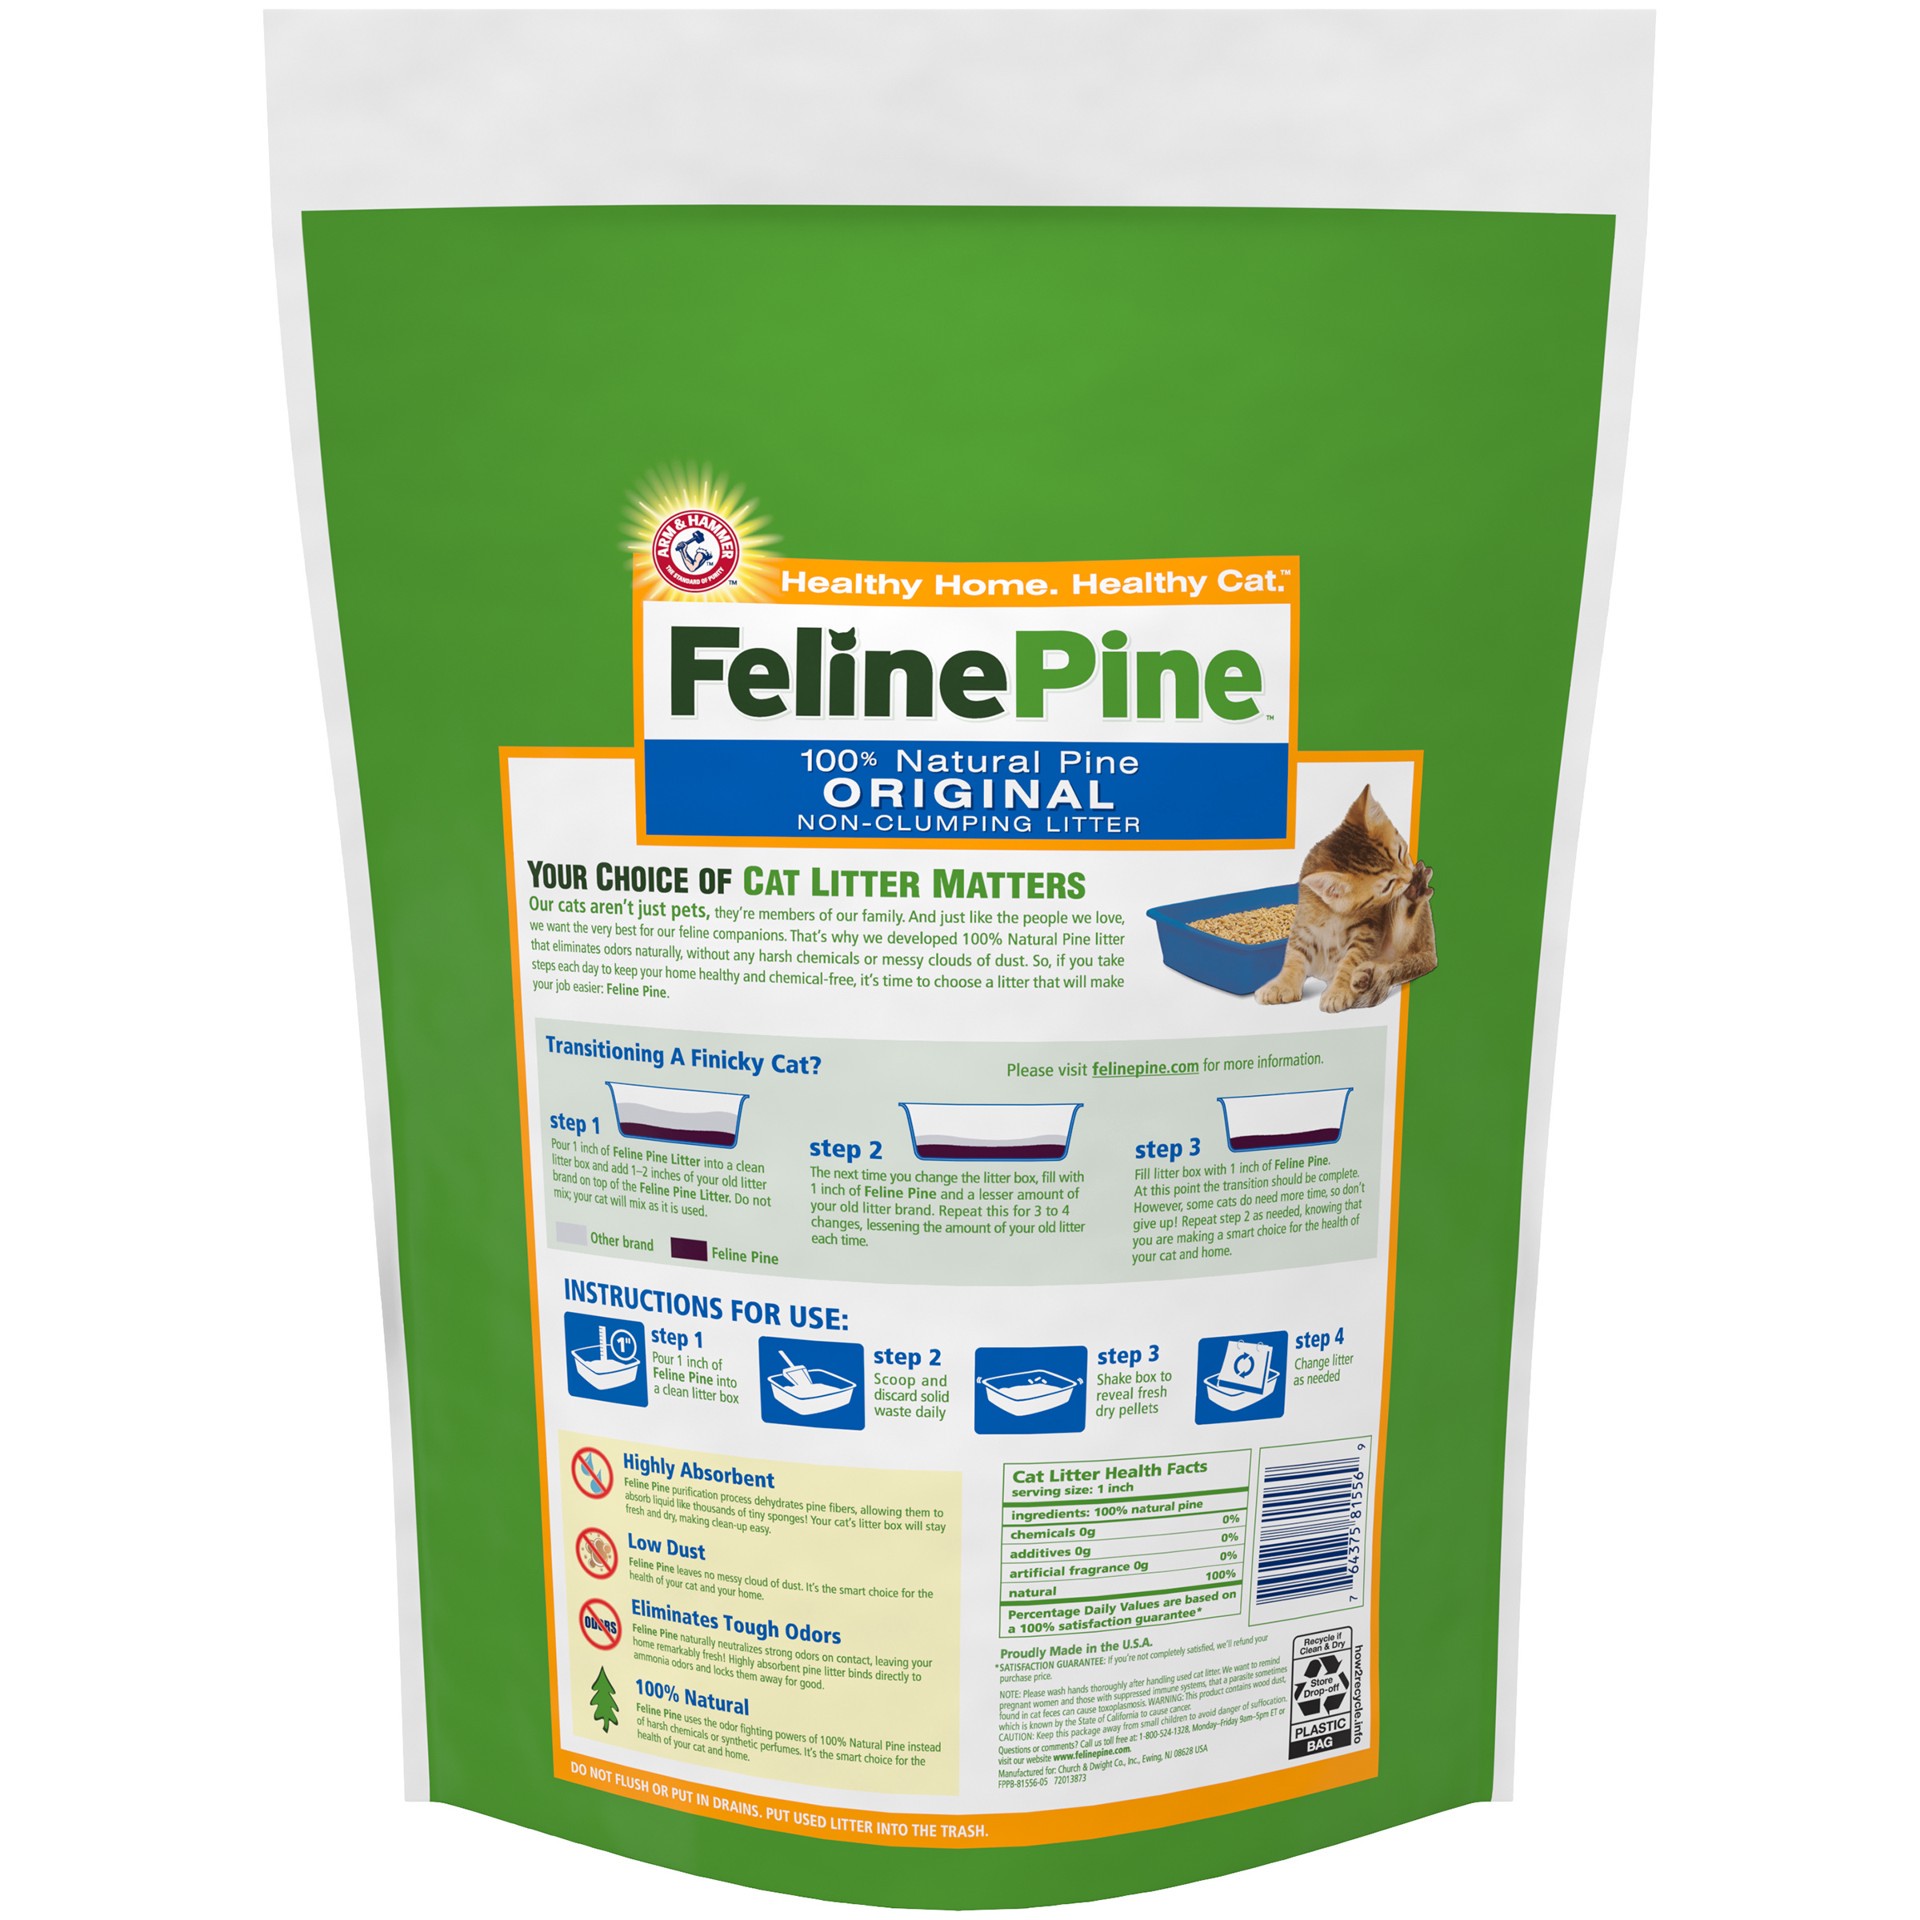 slide 3 of 5, Feline Pine Arm & Hammer Feline Pine 100% Natural Pine Original Non-Clumping Litter, 7 lb, 7 lb